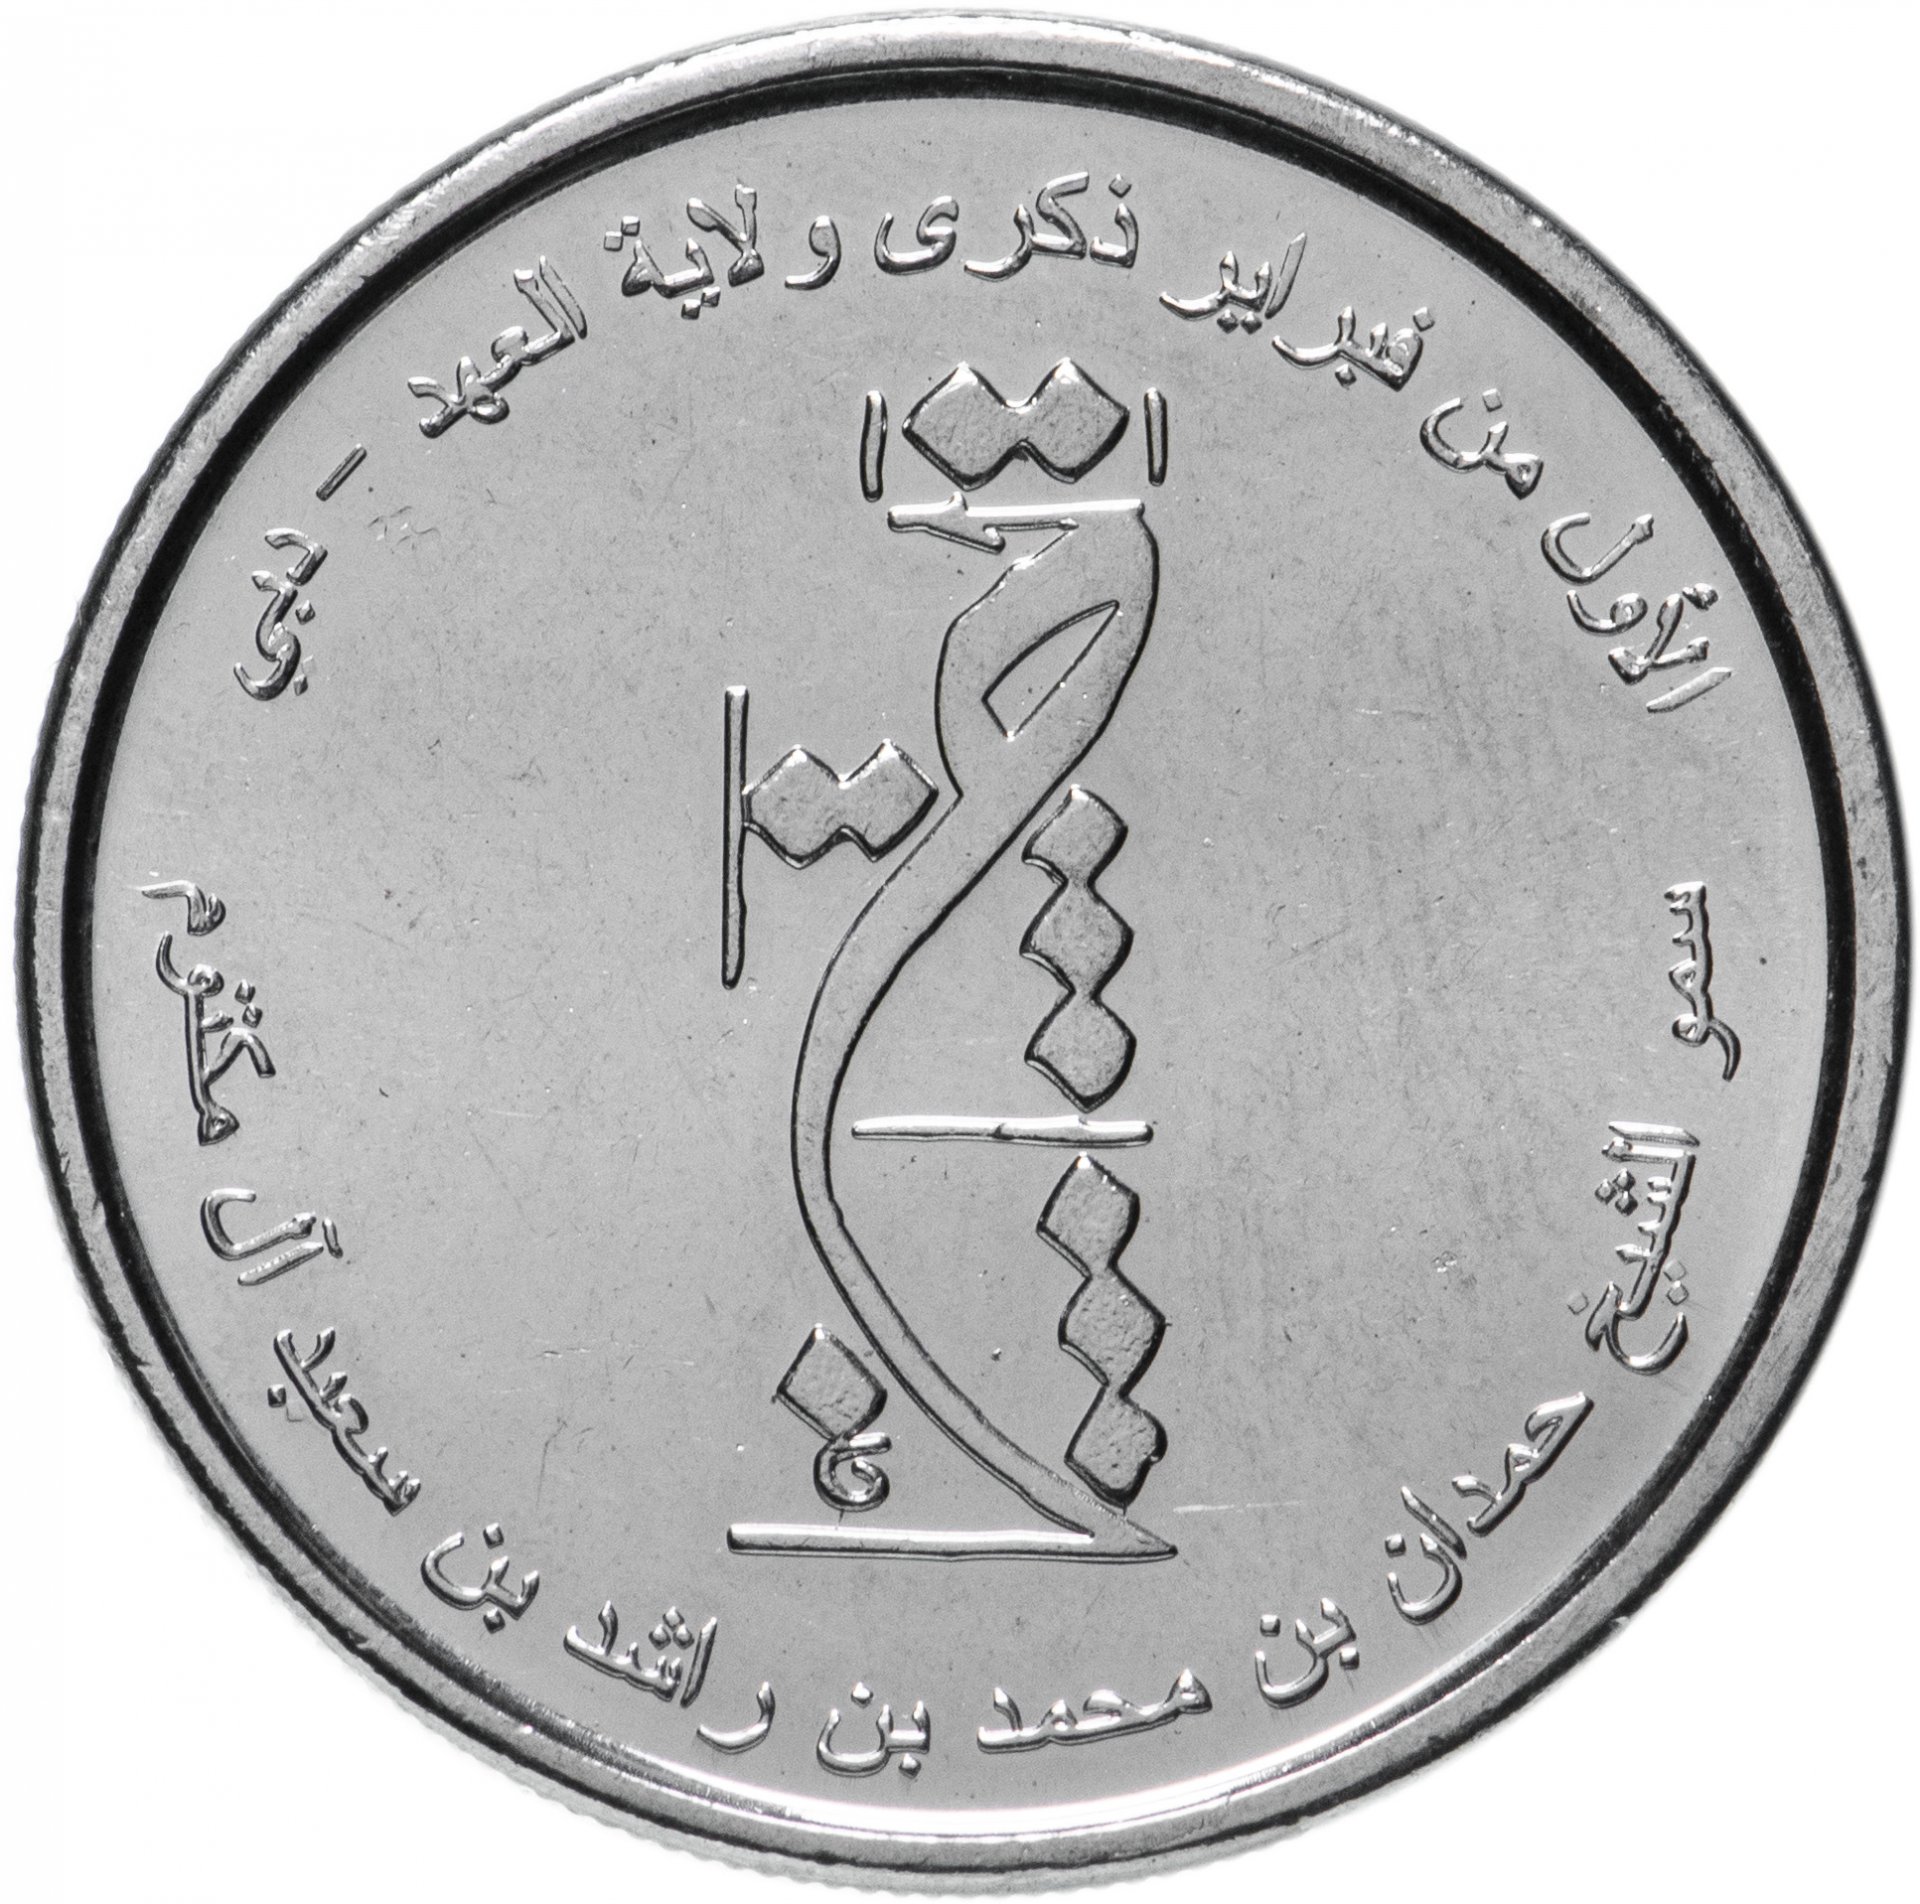 24 дирхам. Монета 1 дирхам (ОАЭ) арабские эмираты.. Монеты ОАЭ 1 дирхам. Дирхам арабских Эмиратов номинал. Монеты эмираты 1 дирхам 1995.